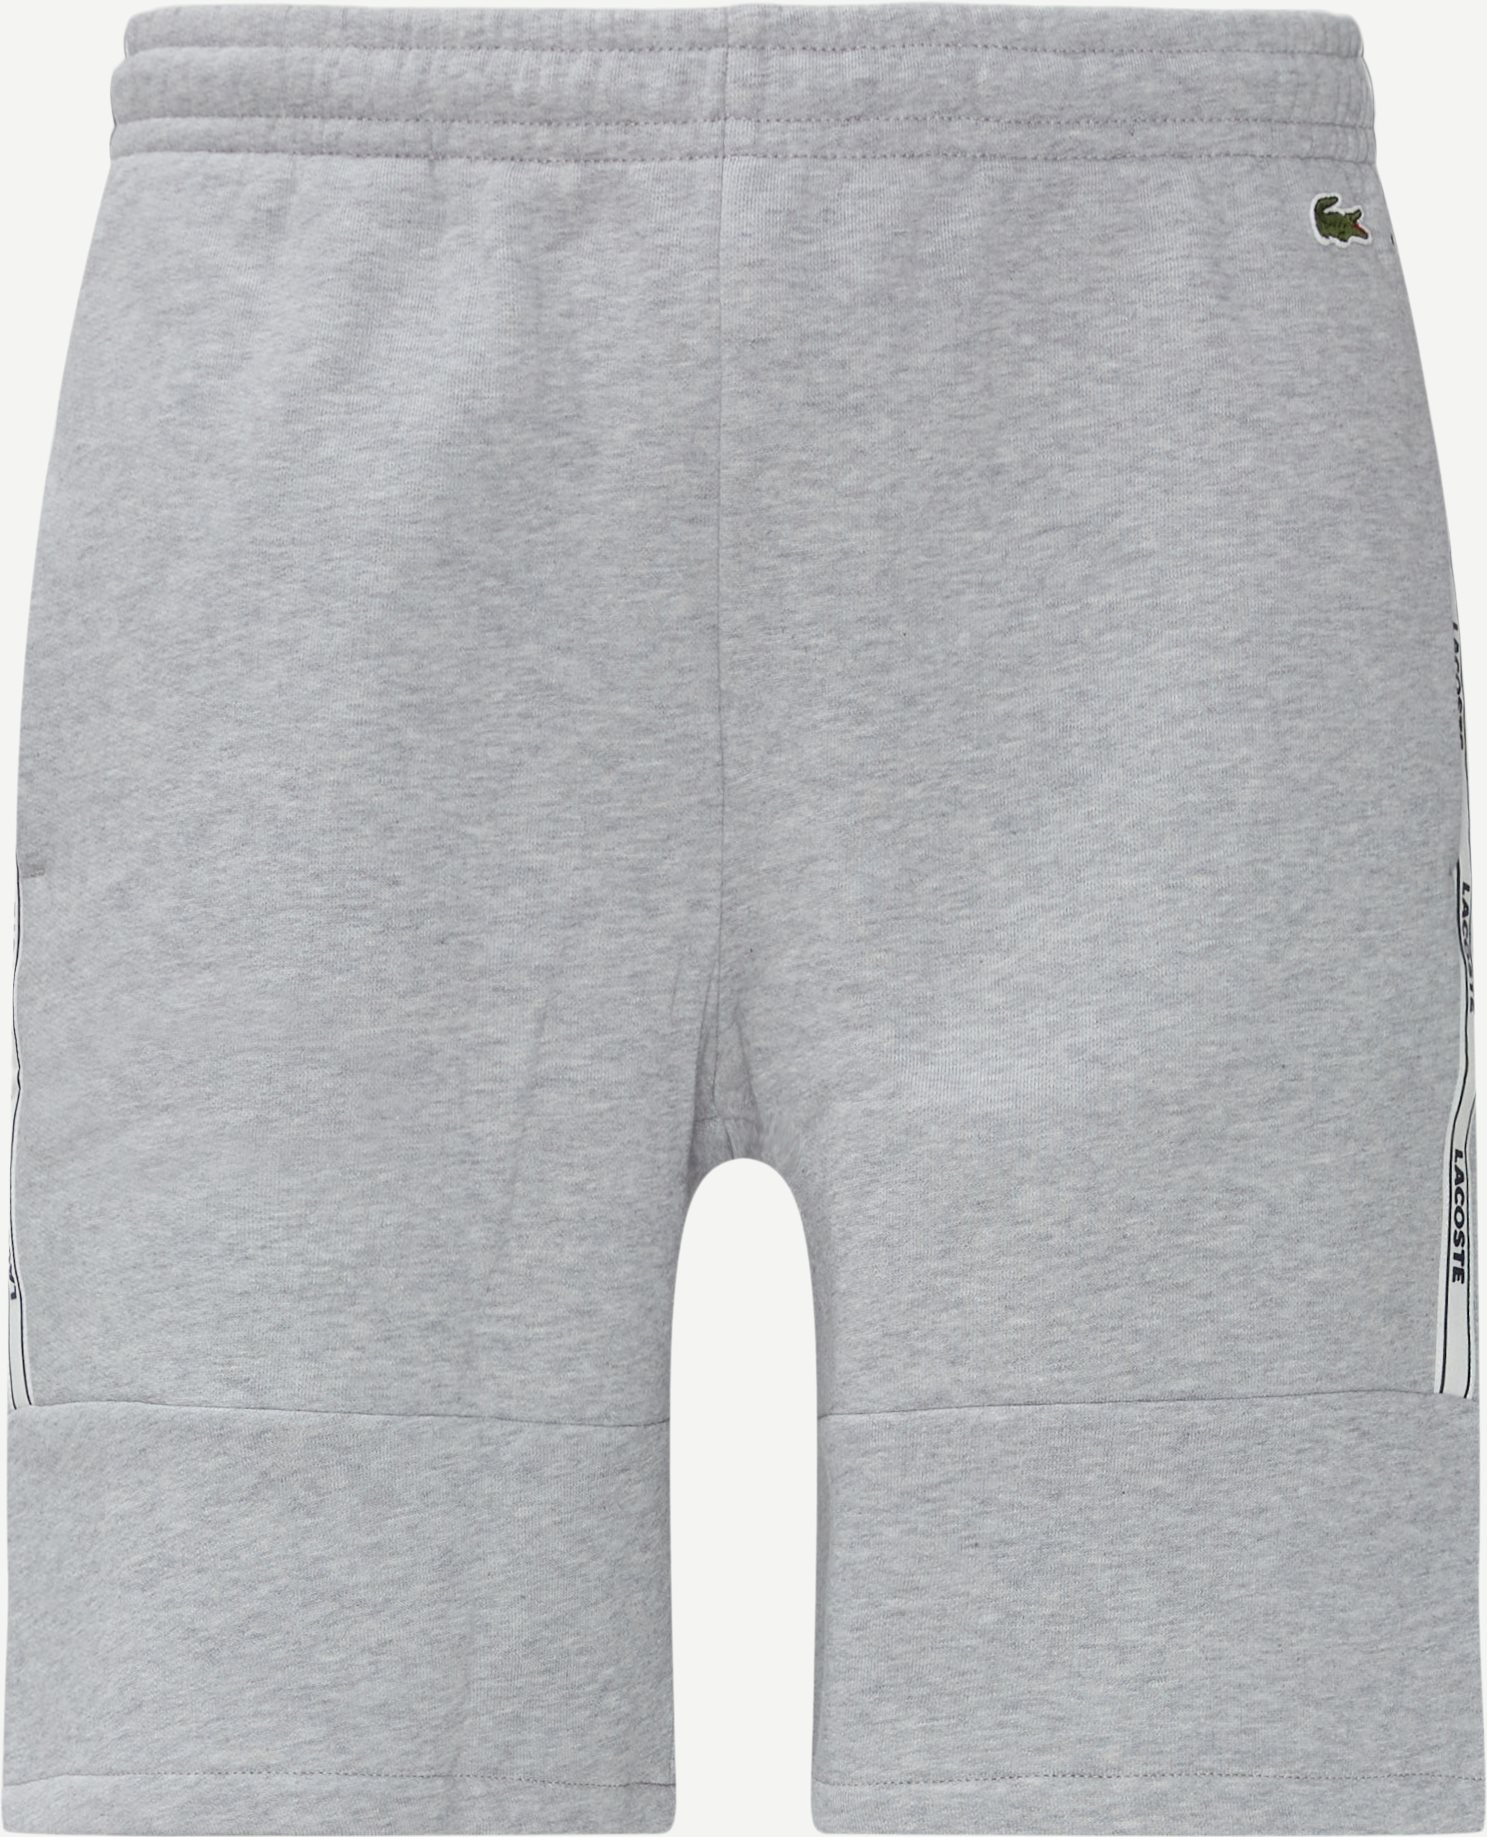 Branded Bands Fleece Shorts - Shorts - Regular fit - Grå